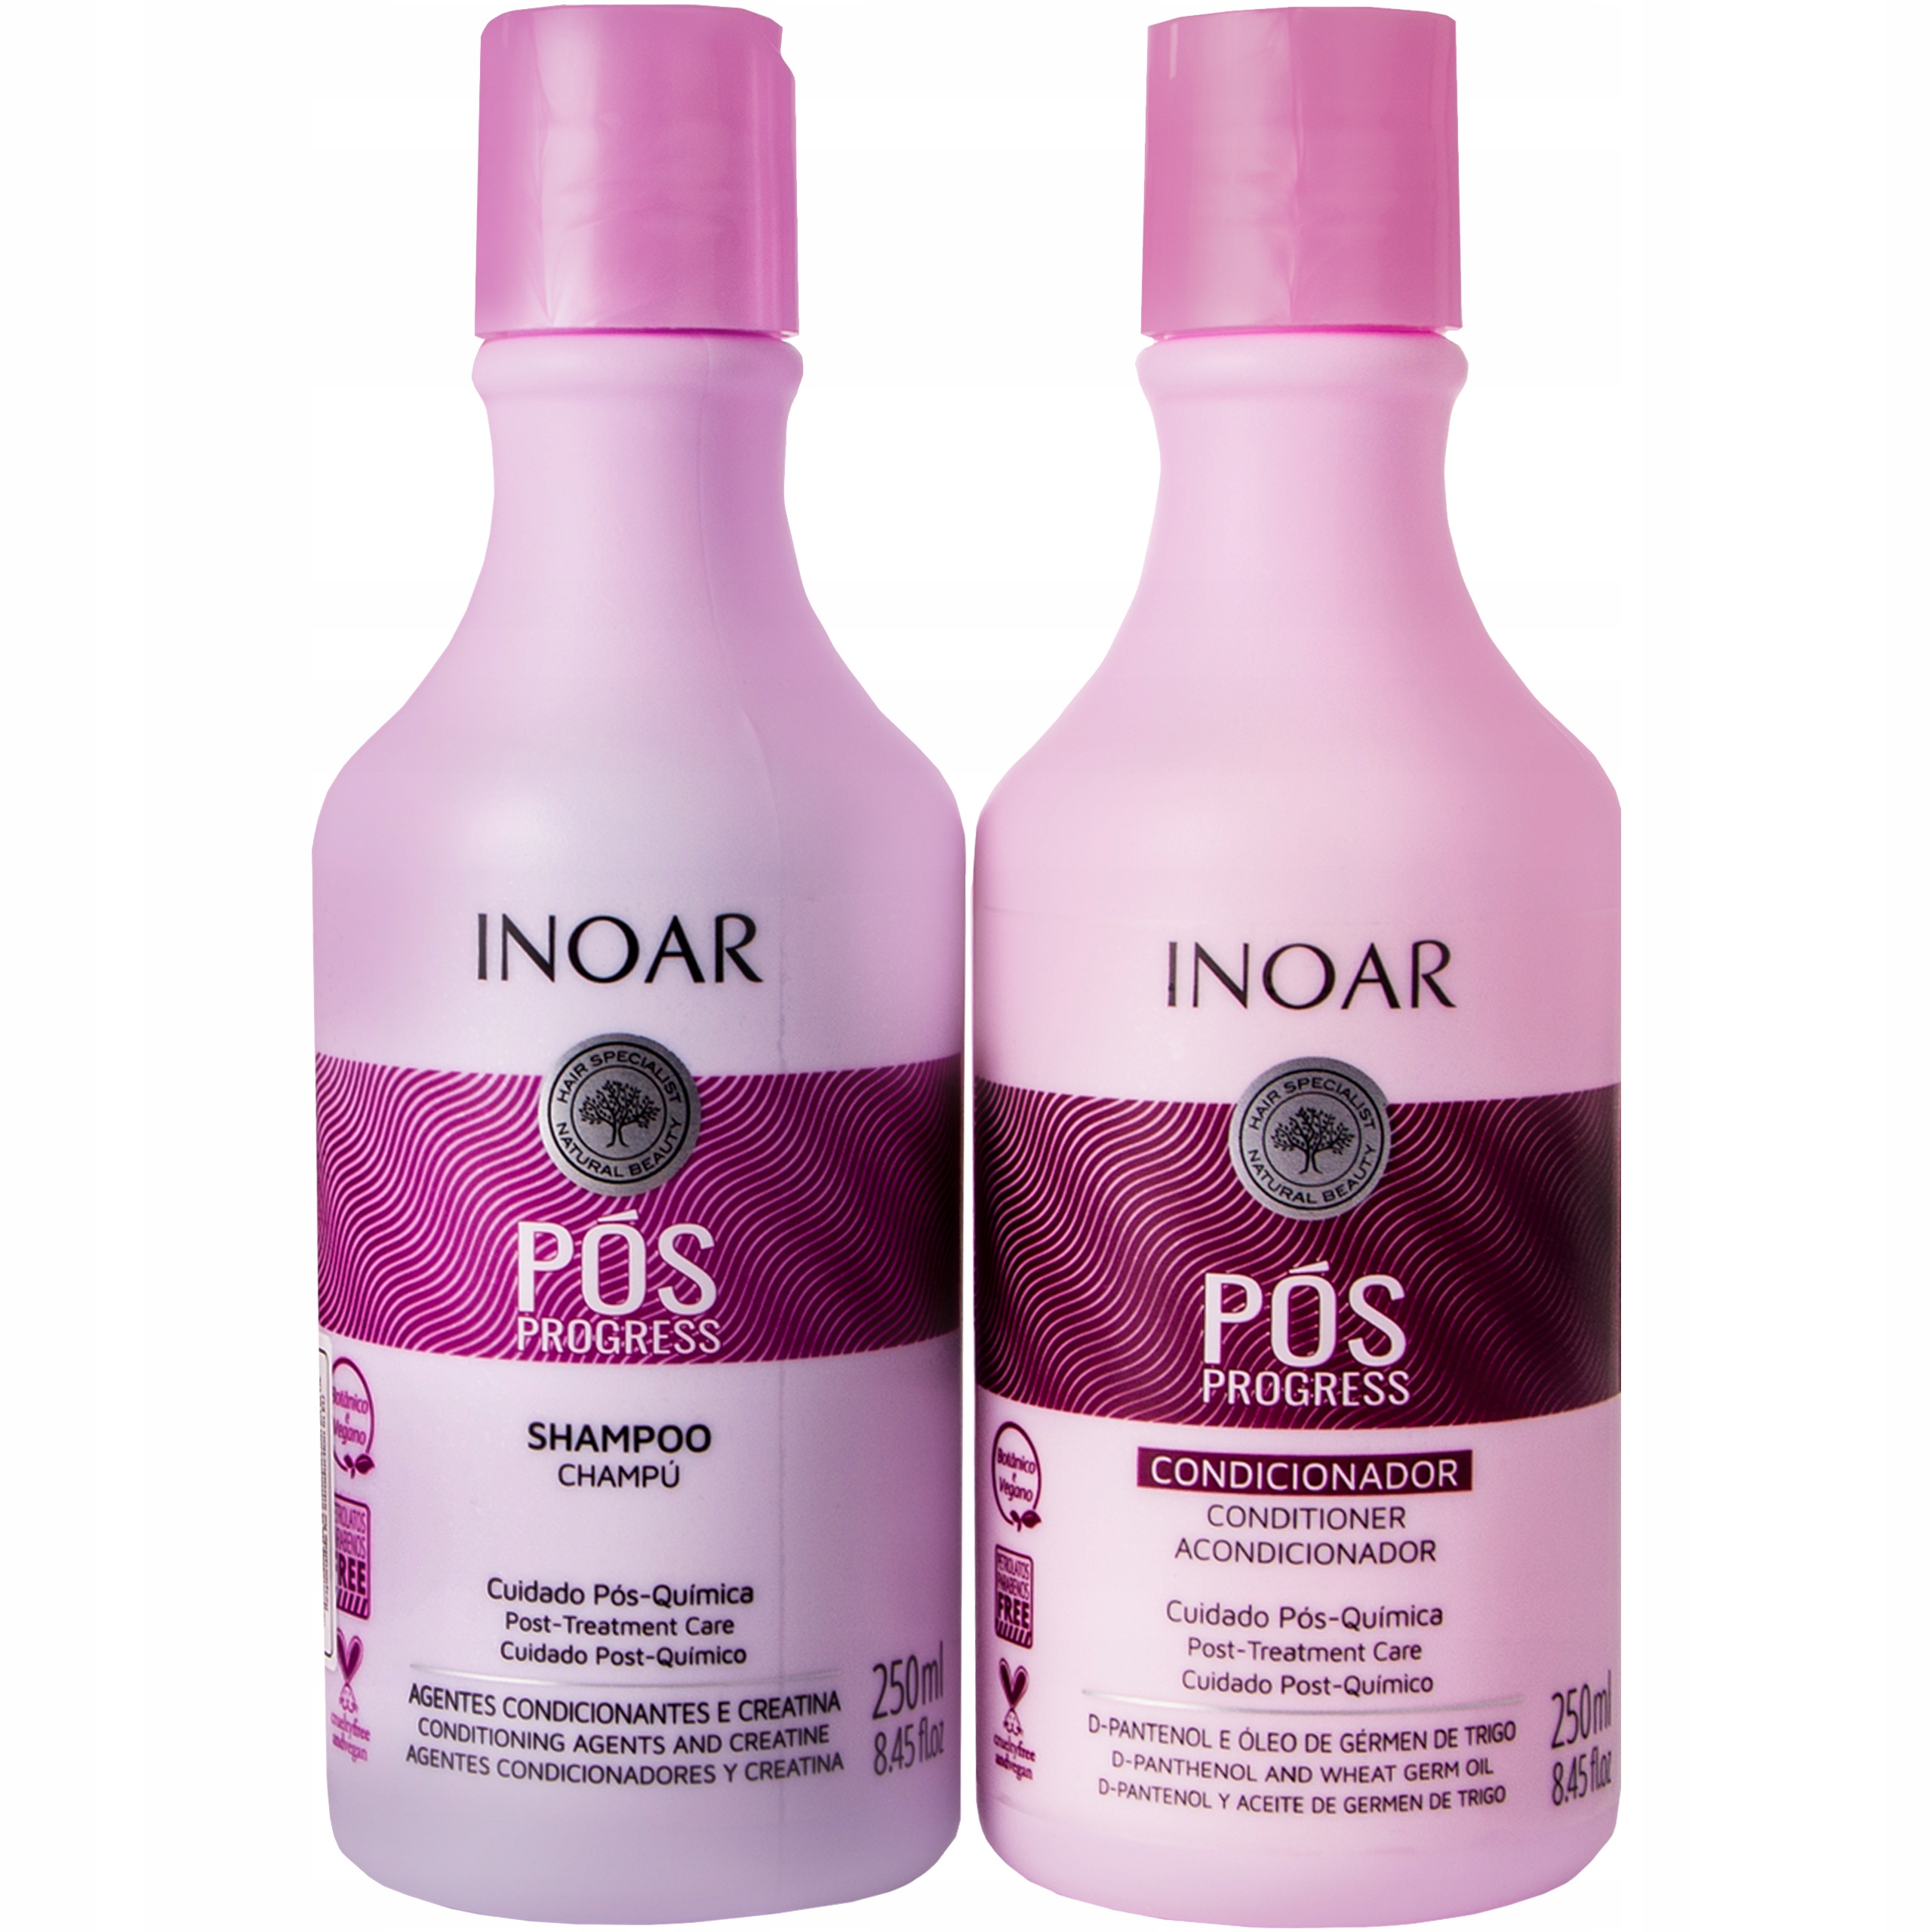 szampon i odzywka po keratynowym prostowaniu ionoar